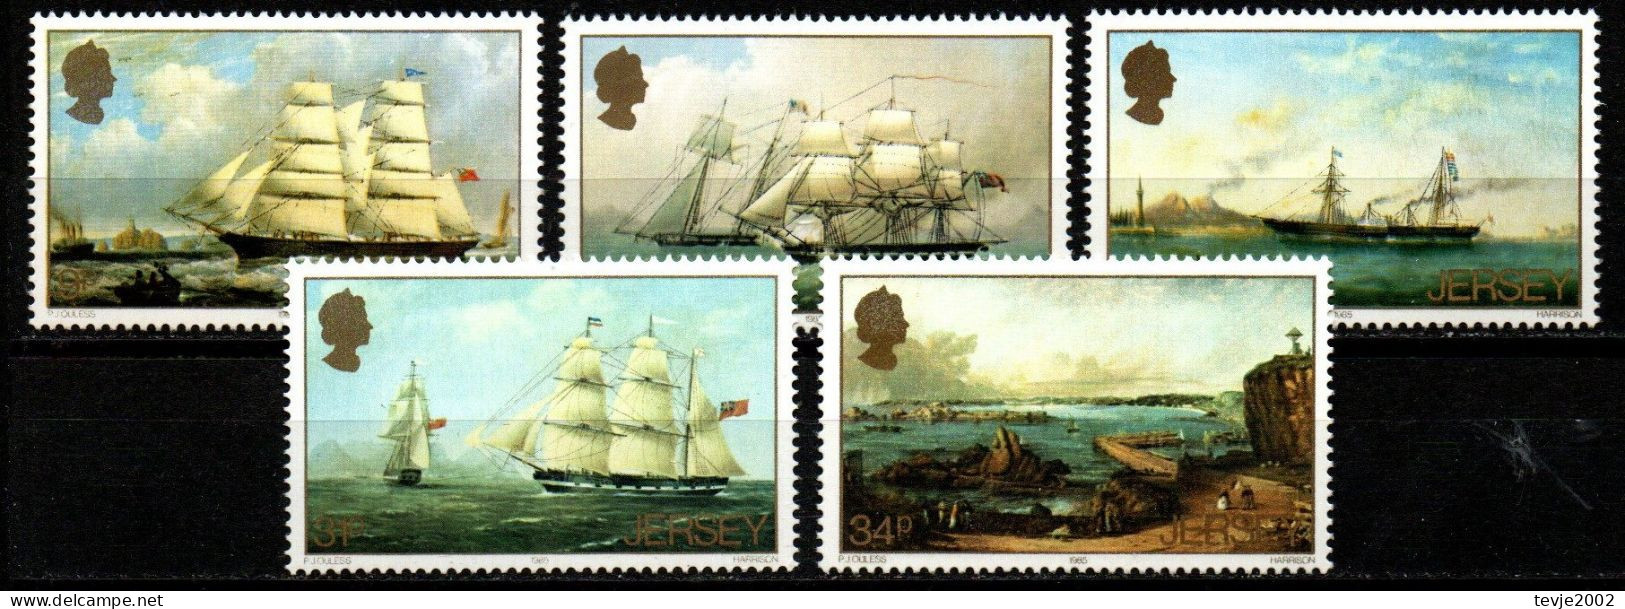 Jersey 1985 - Mi.Nr. 342 - 346 - Postfrisch MNH - Segelschiffe Sailing Ships - Barcos